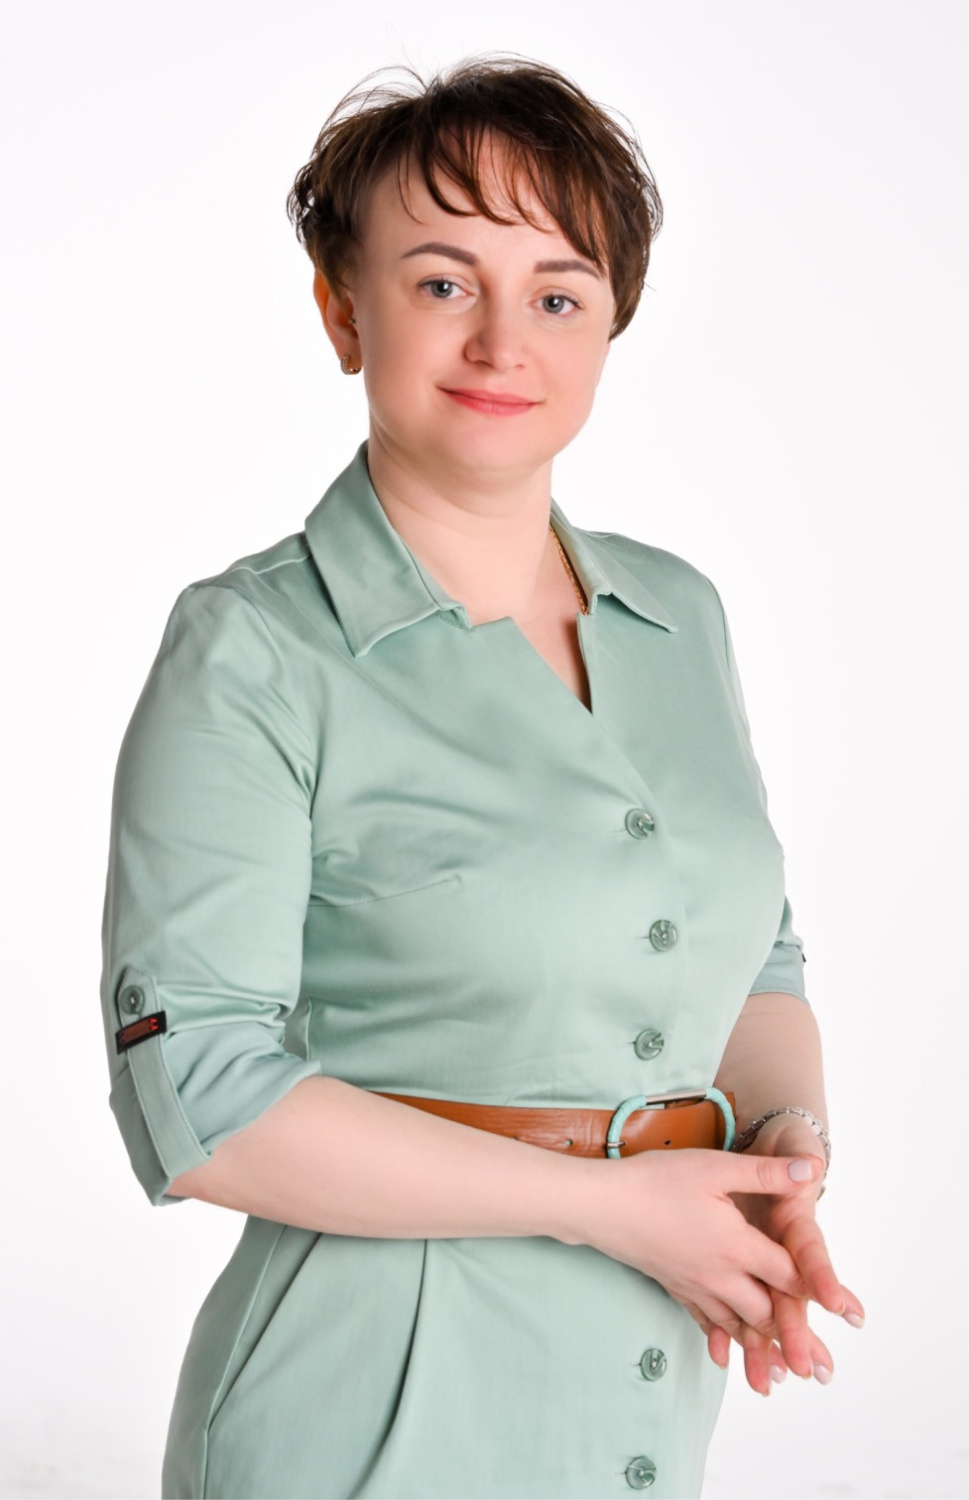 Irina Vladimirovna Piletskaya